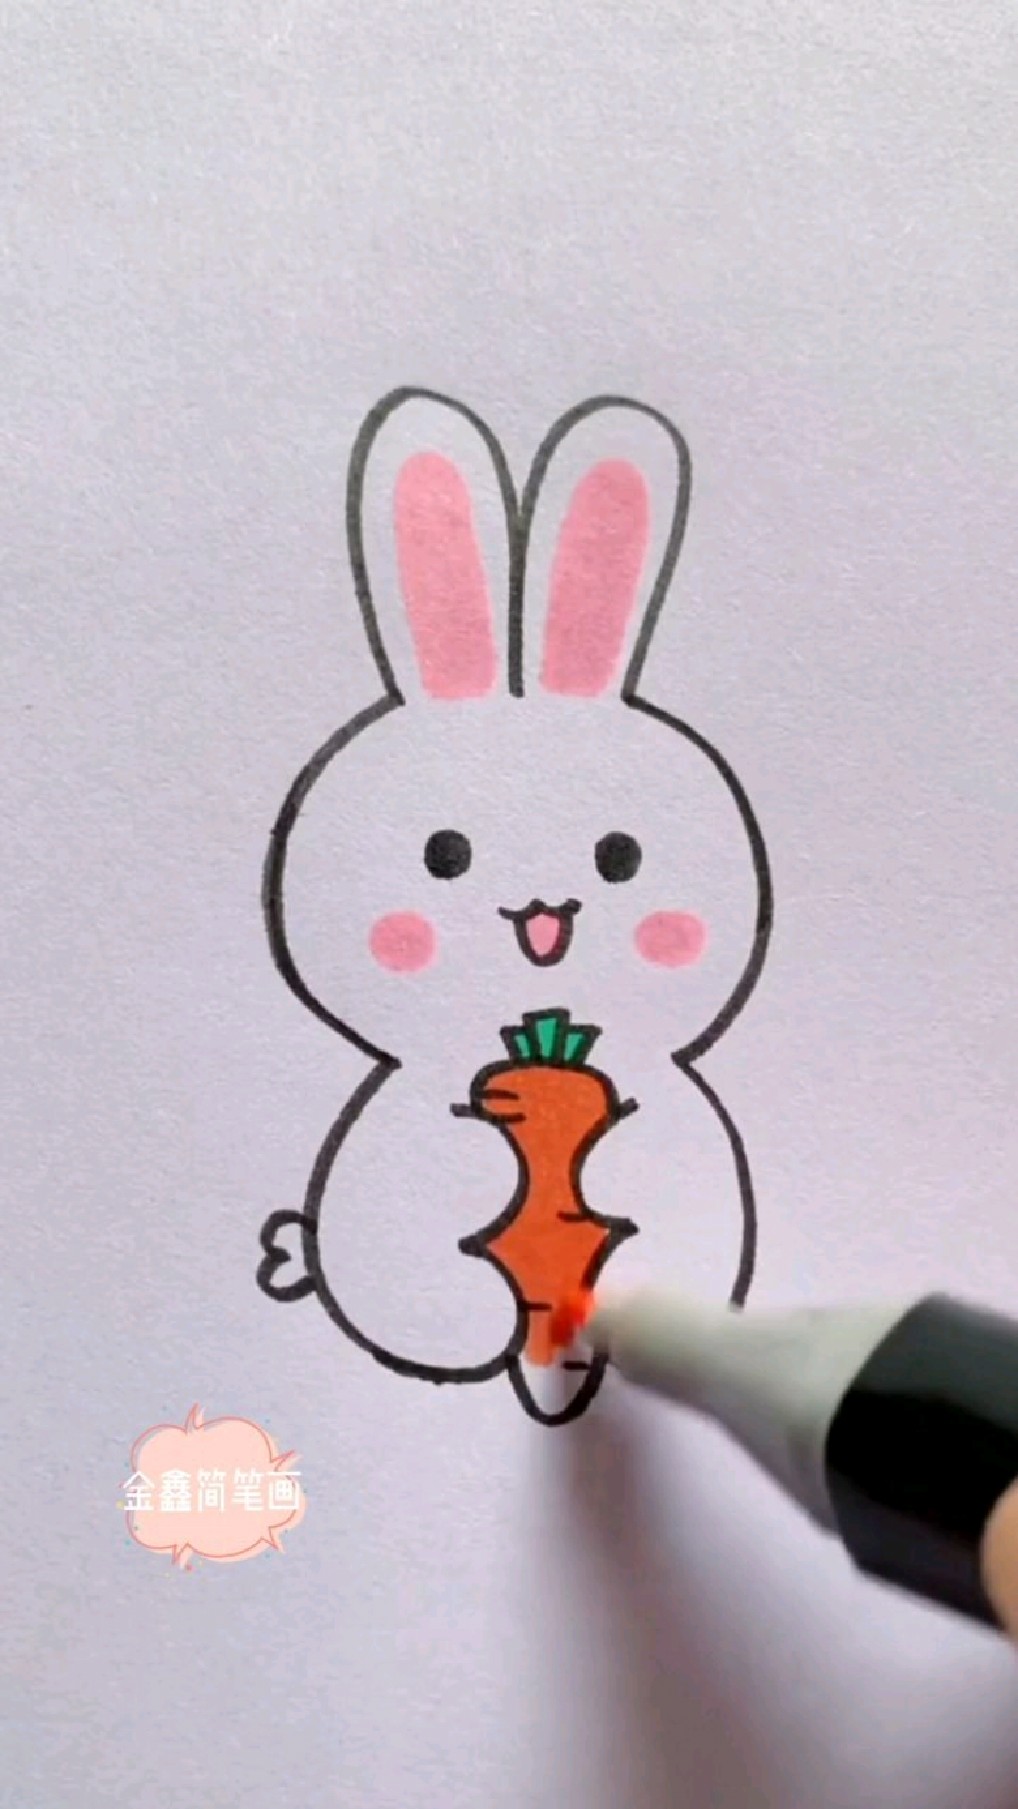 数字3教你简笔画小白兔吃萝卜